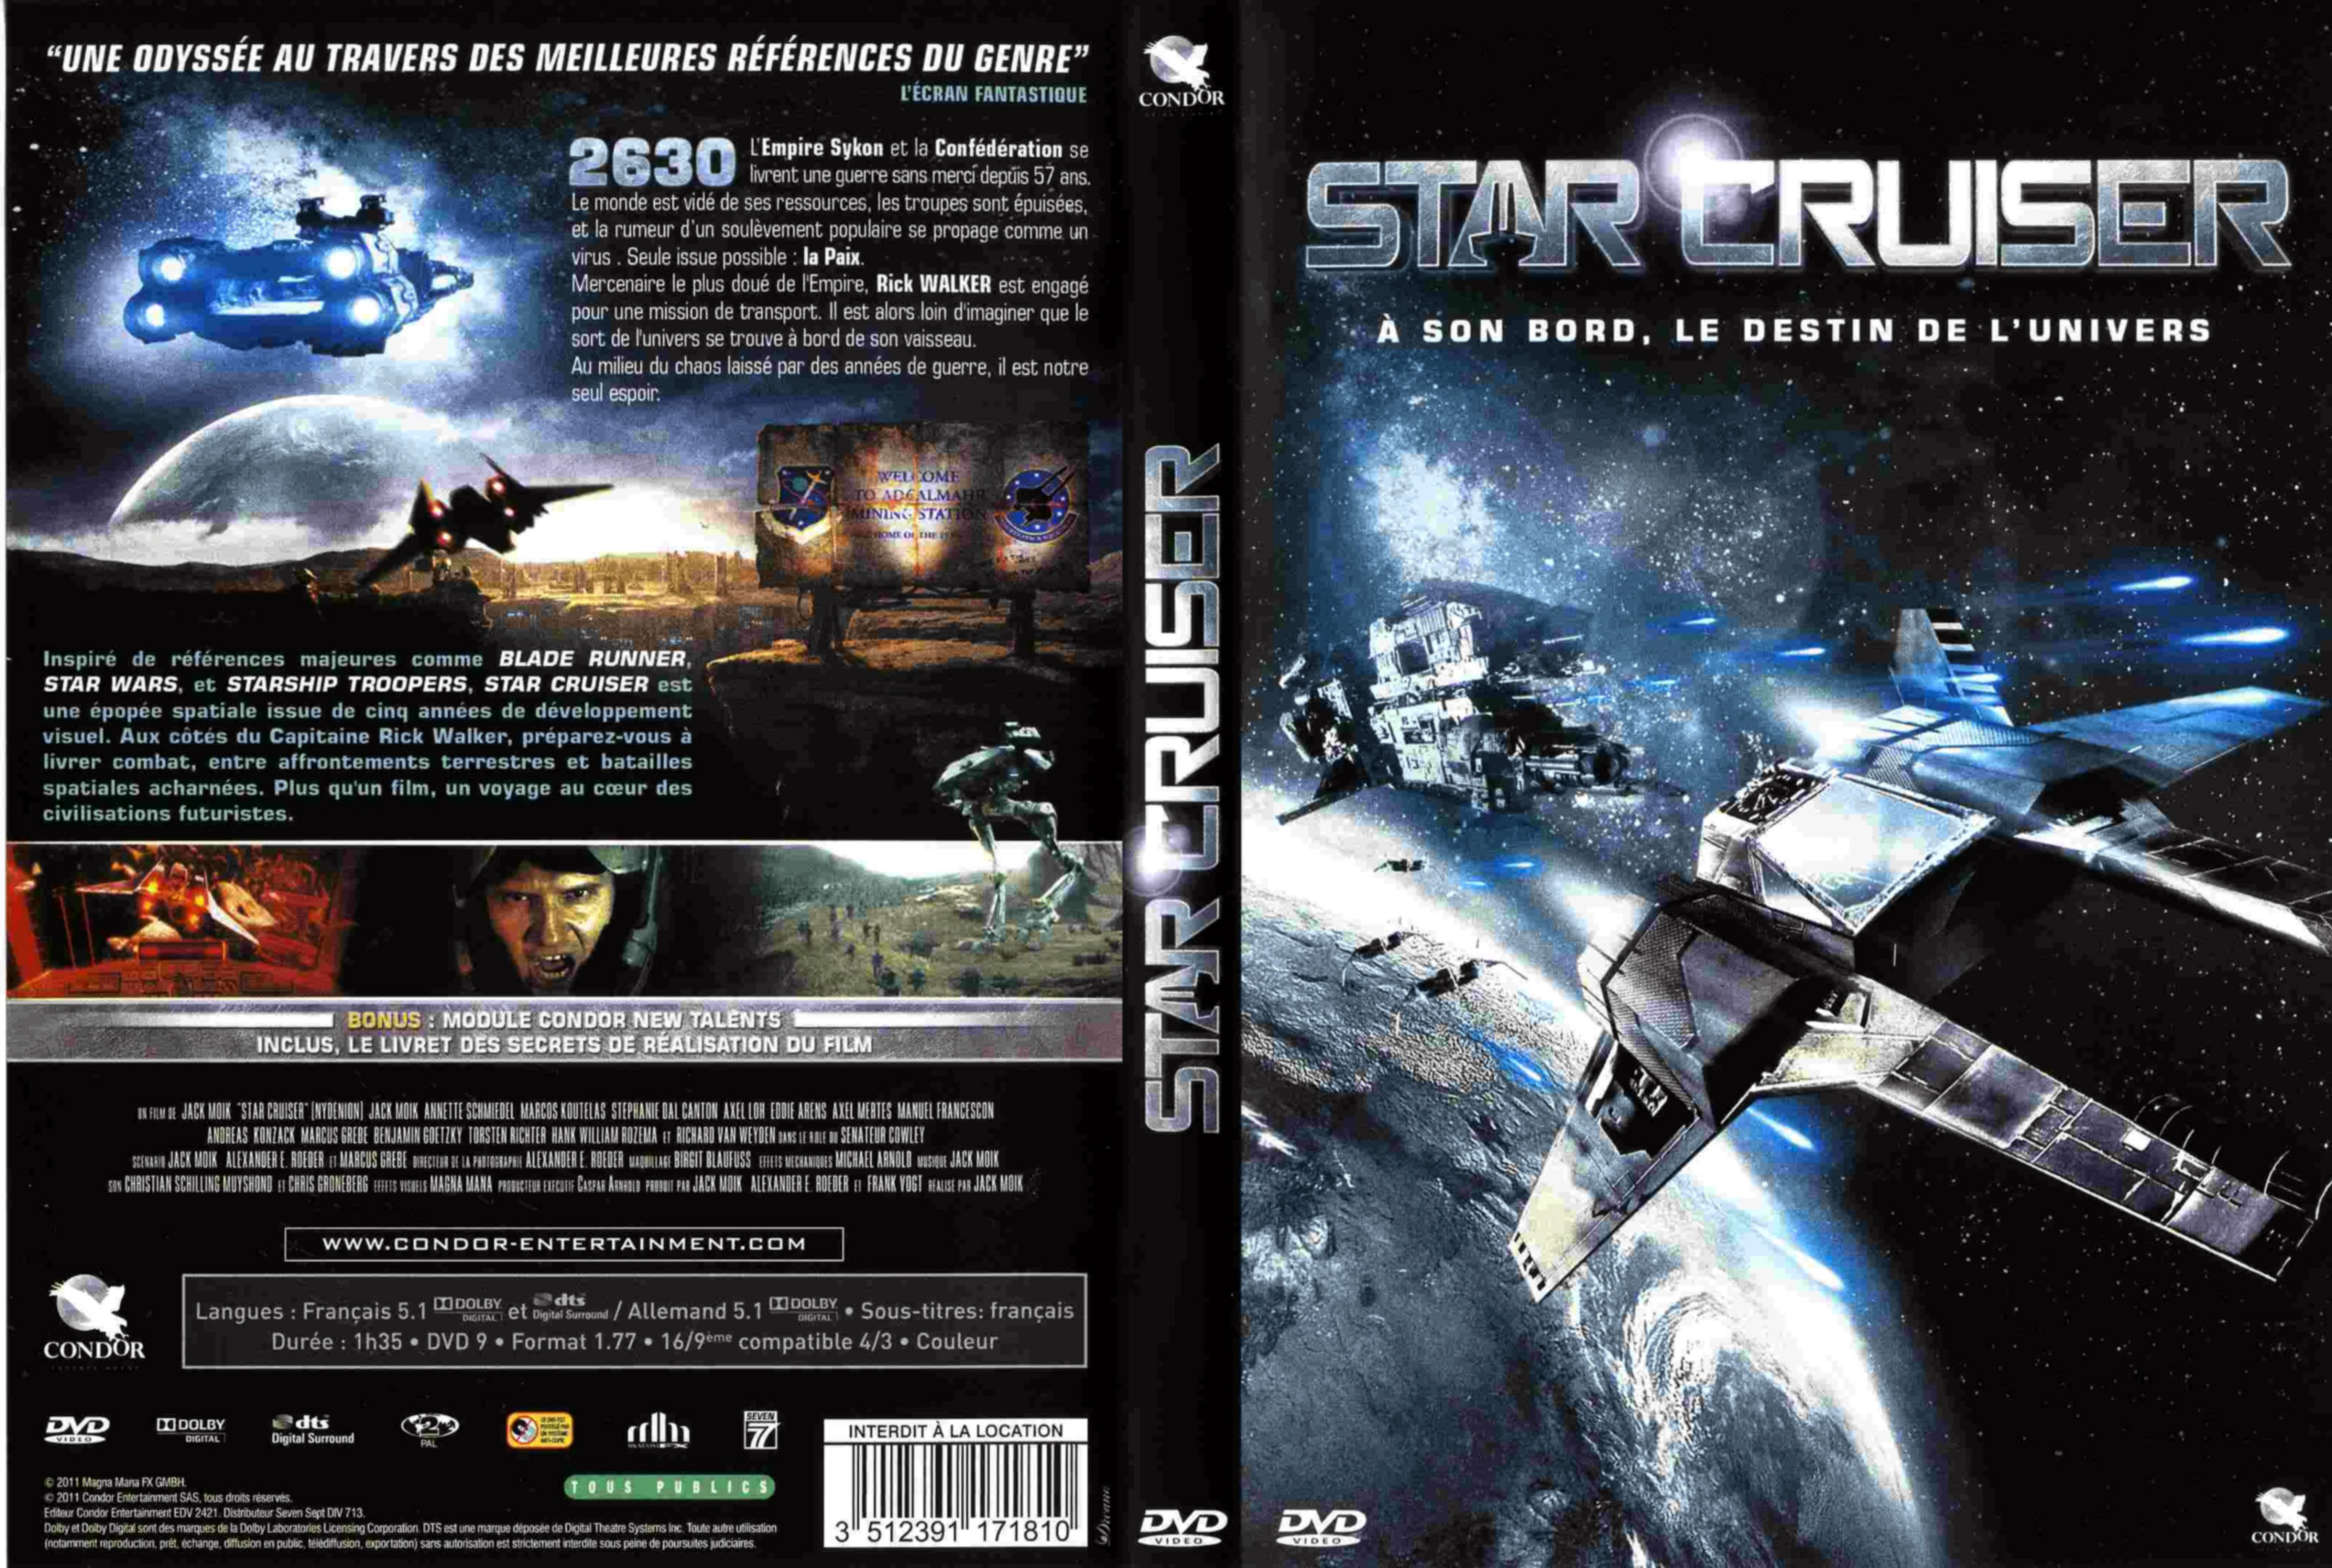 Jaquette DVD Star cruiser